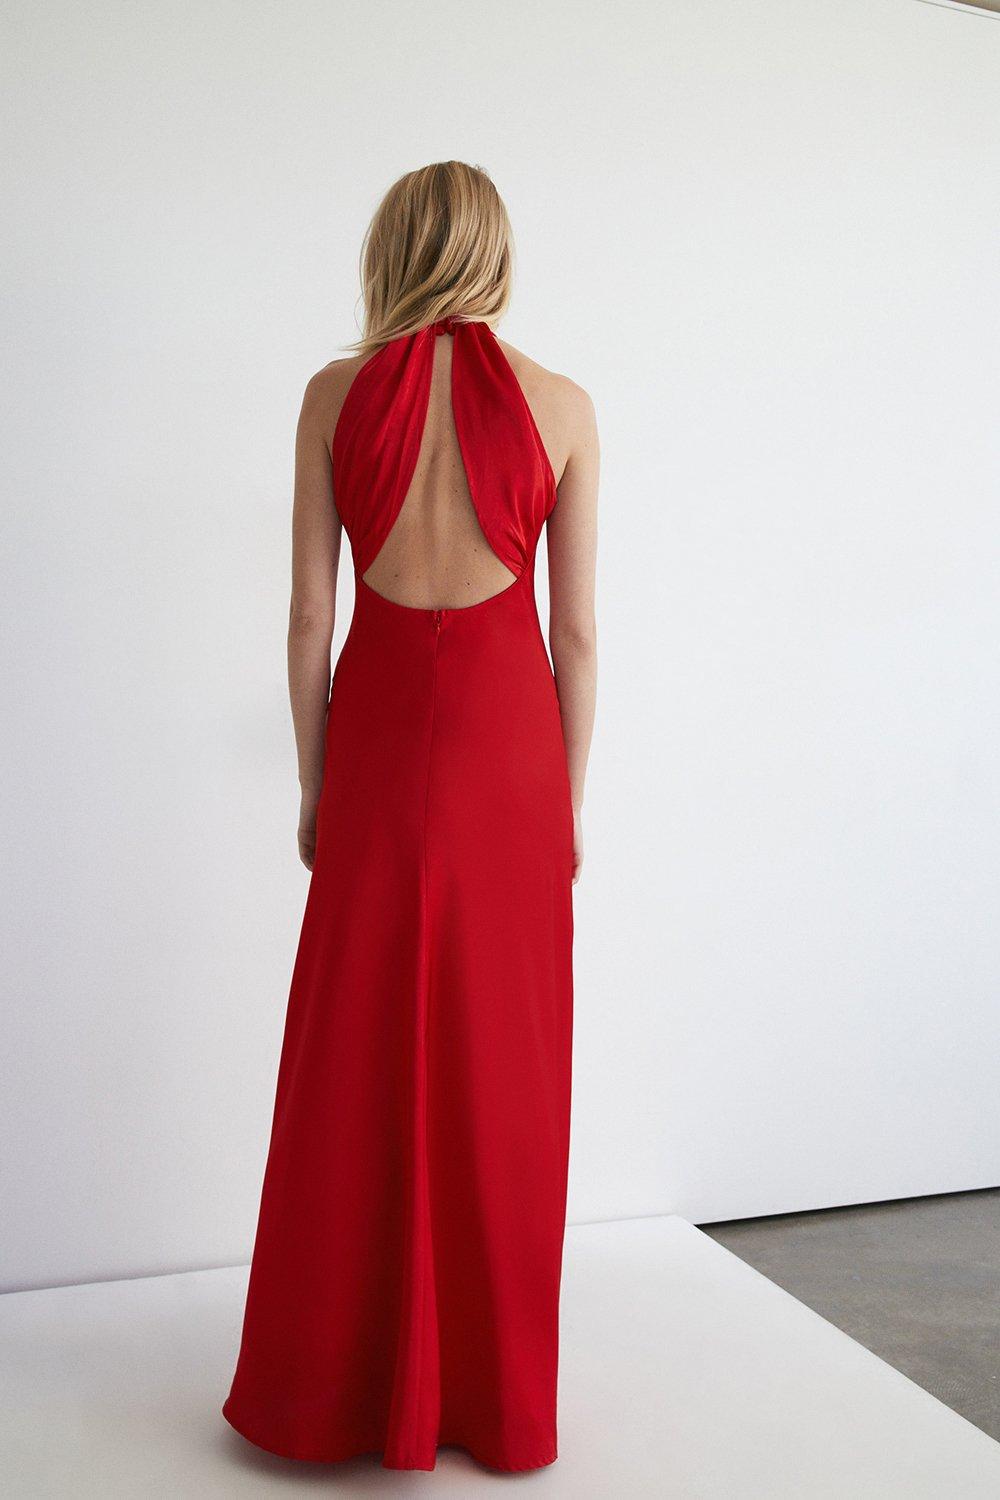 satynowa czerwona maxi sukienka odkryte plecy